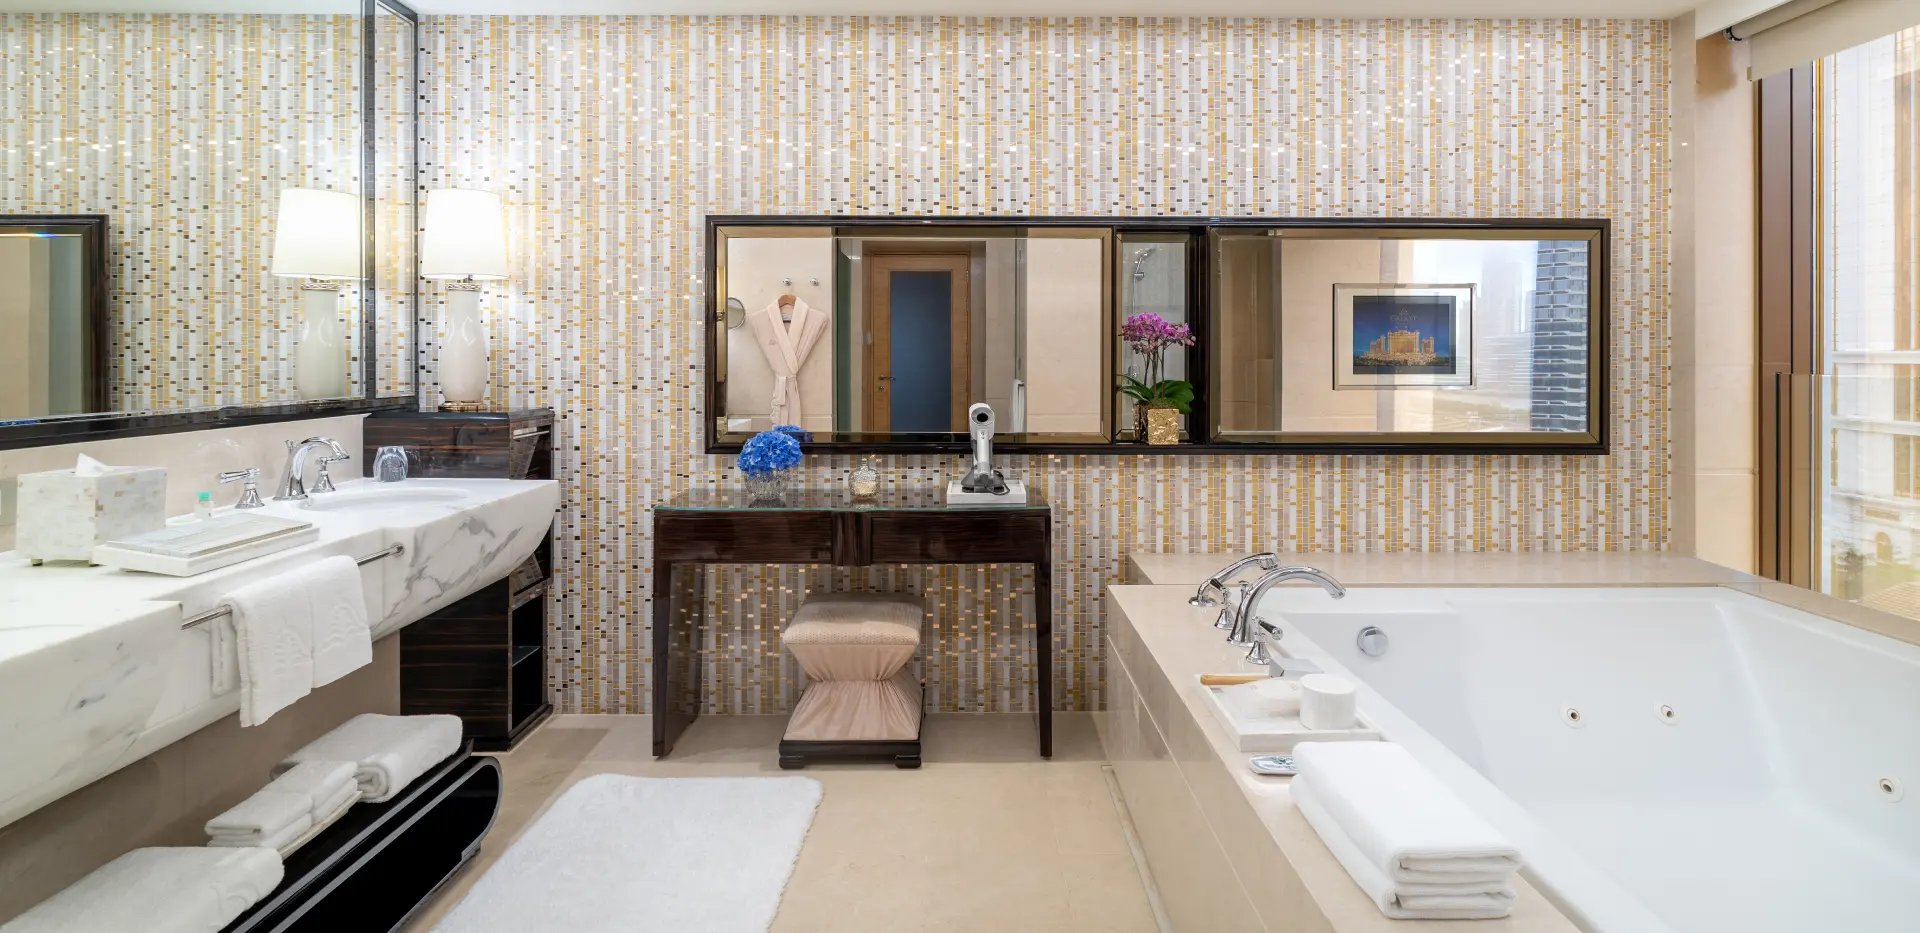 Premier Suite - Bathroom (1920x933)